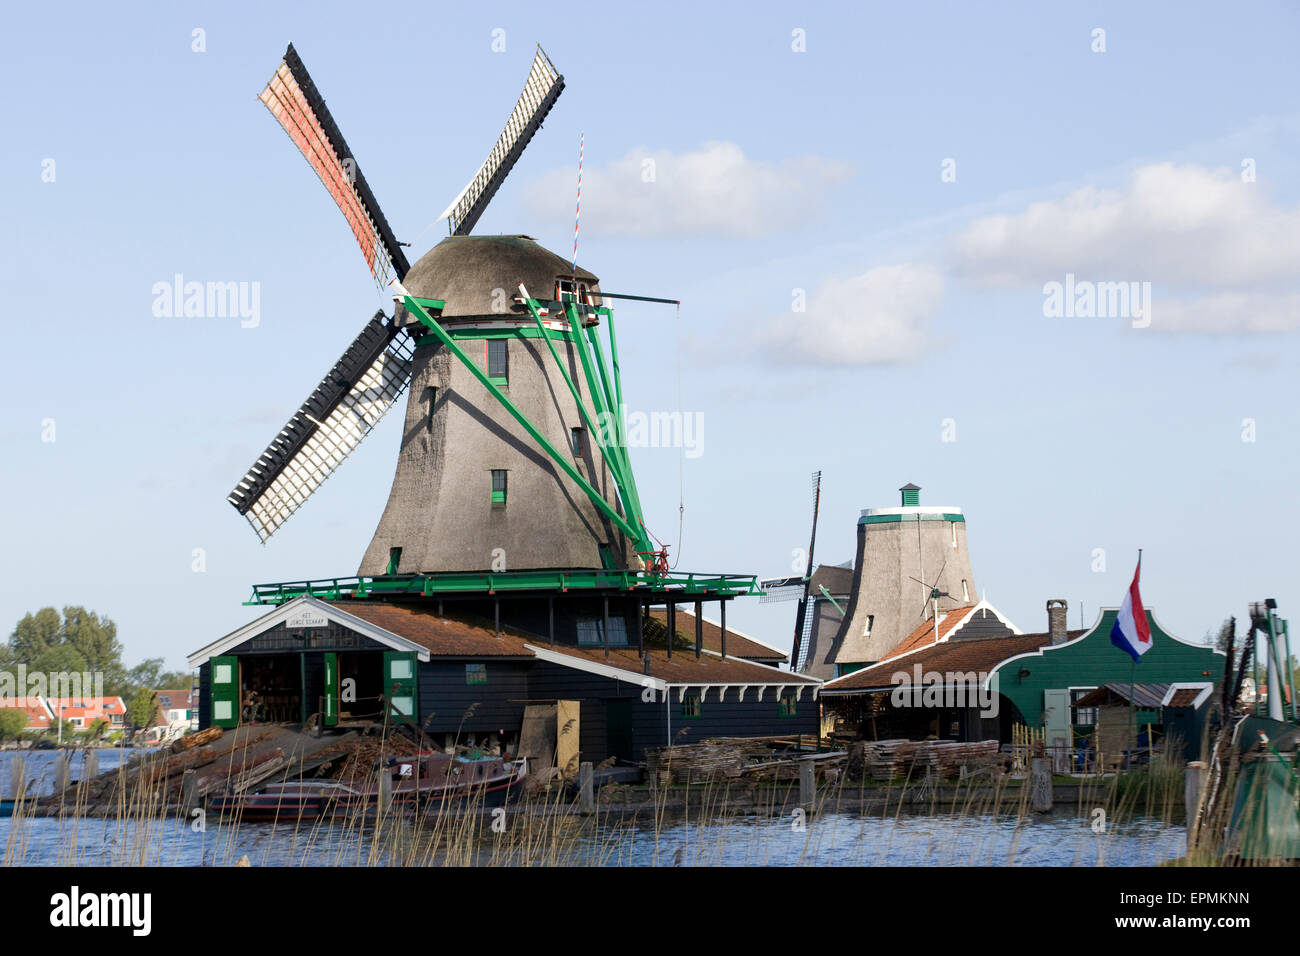 Molinos de viento en Zaanse Schans, molinos de viento antiguo holandés de trabajo a lo largo del río de Zaan Foto de stock